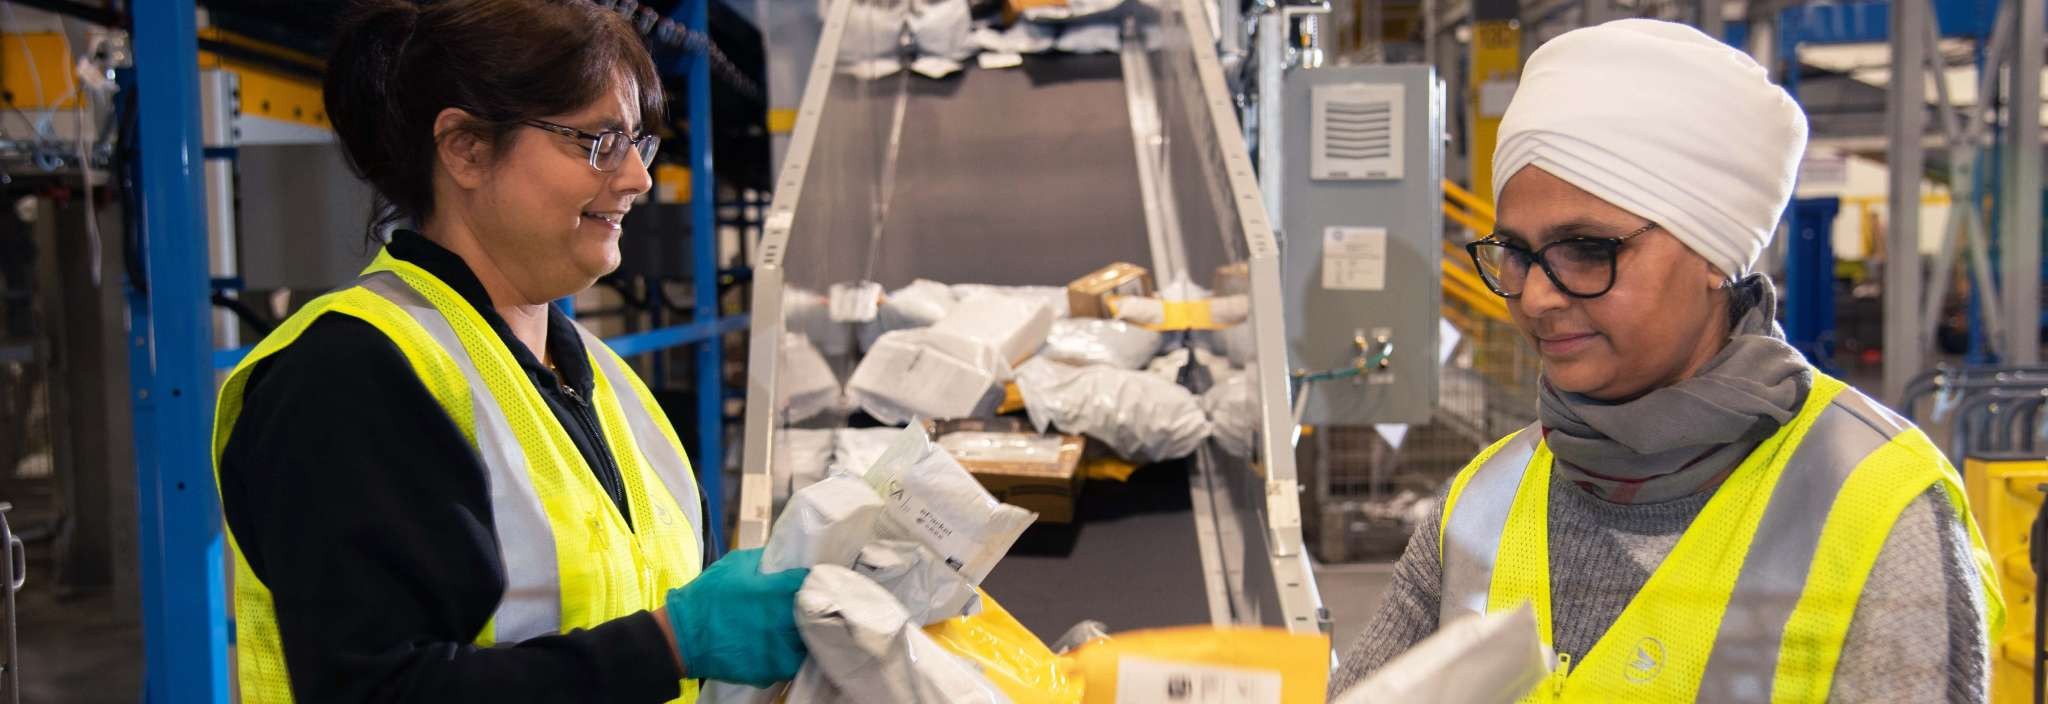 Deux employées de Postes Canada portant un gilet de sécurité jaune vif trient des colis et des enveloppes 